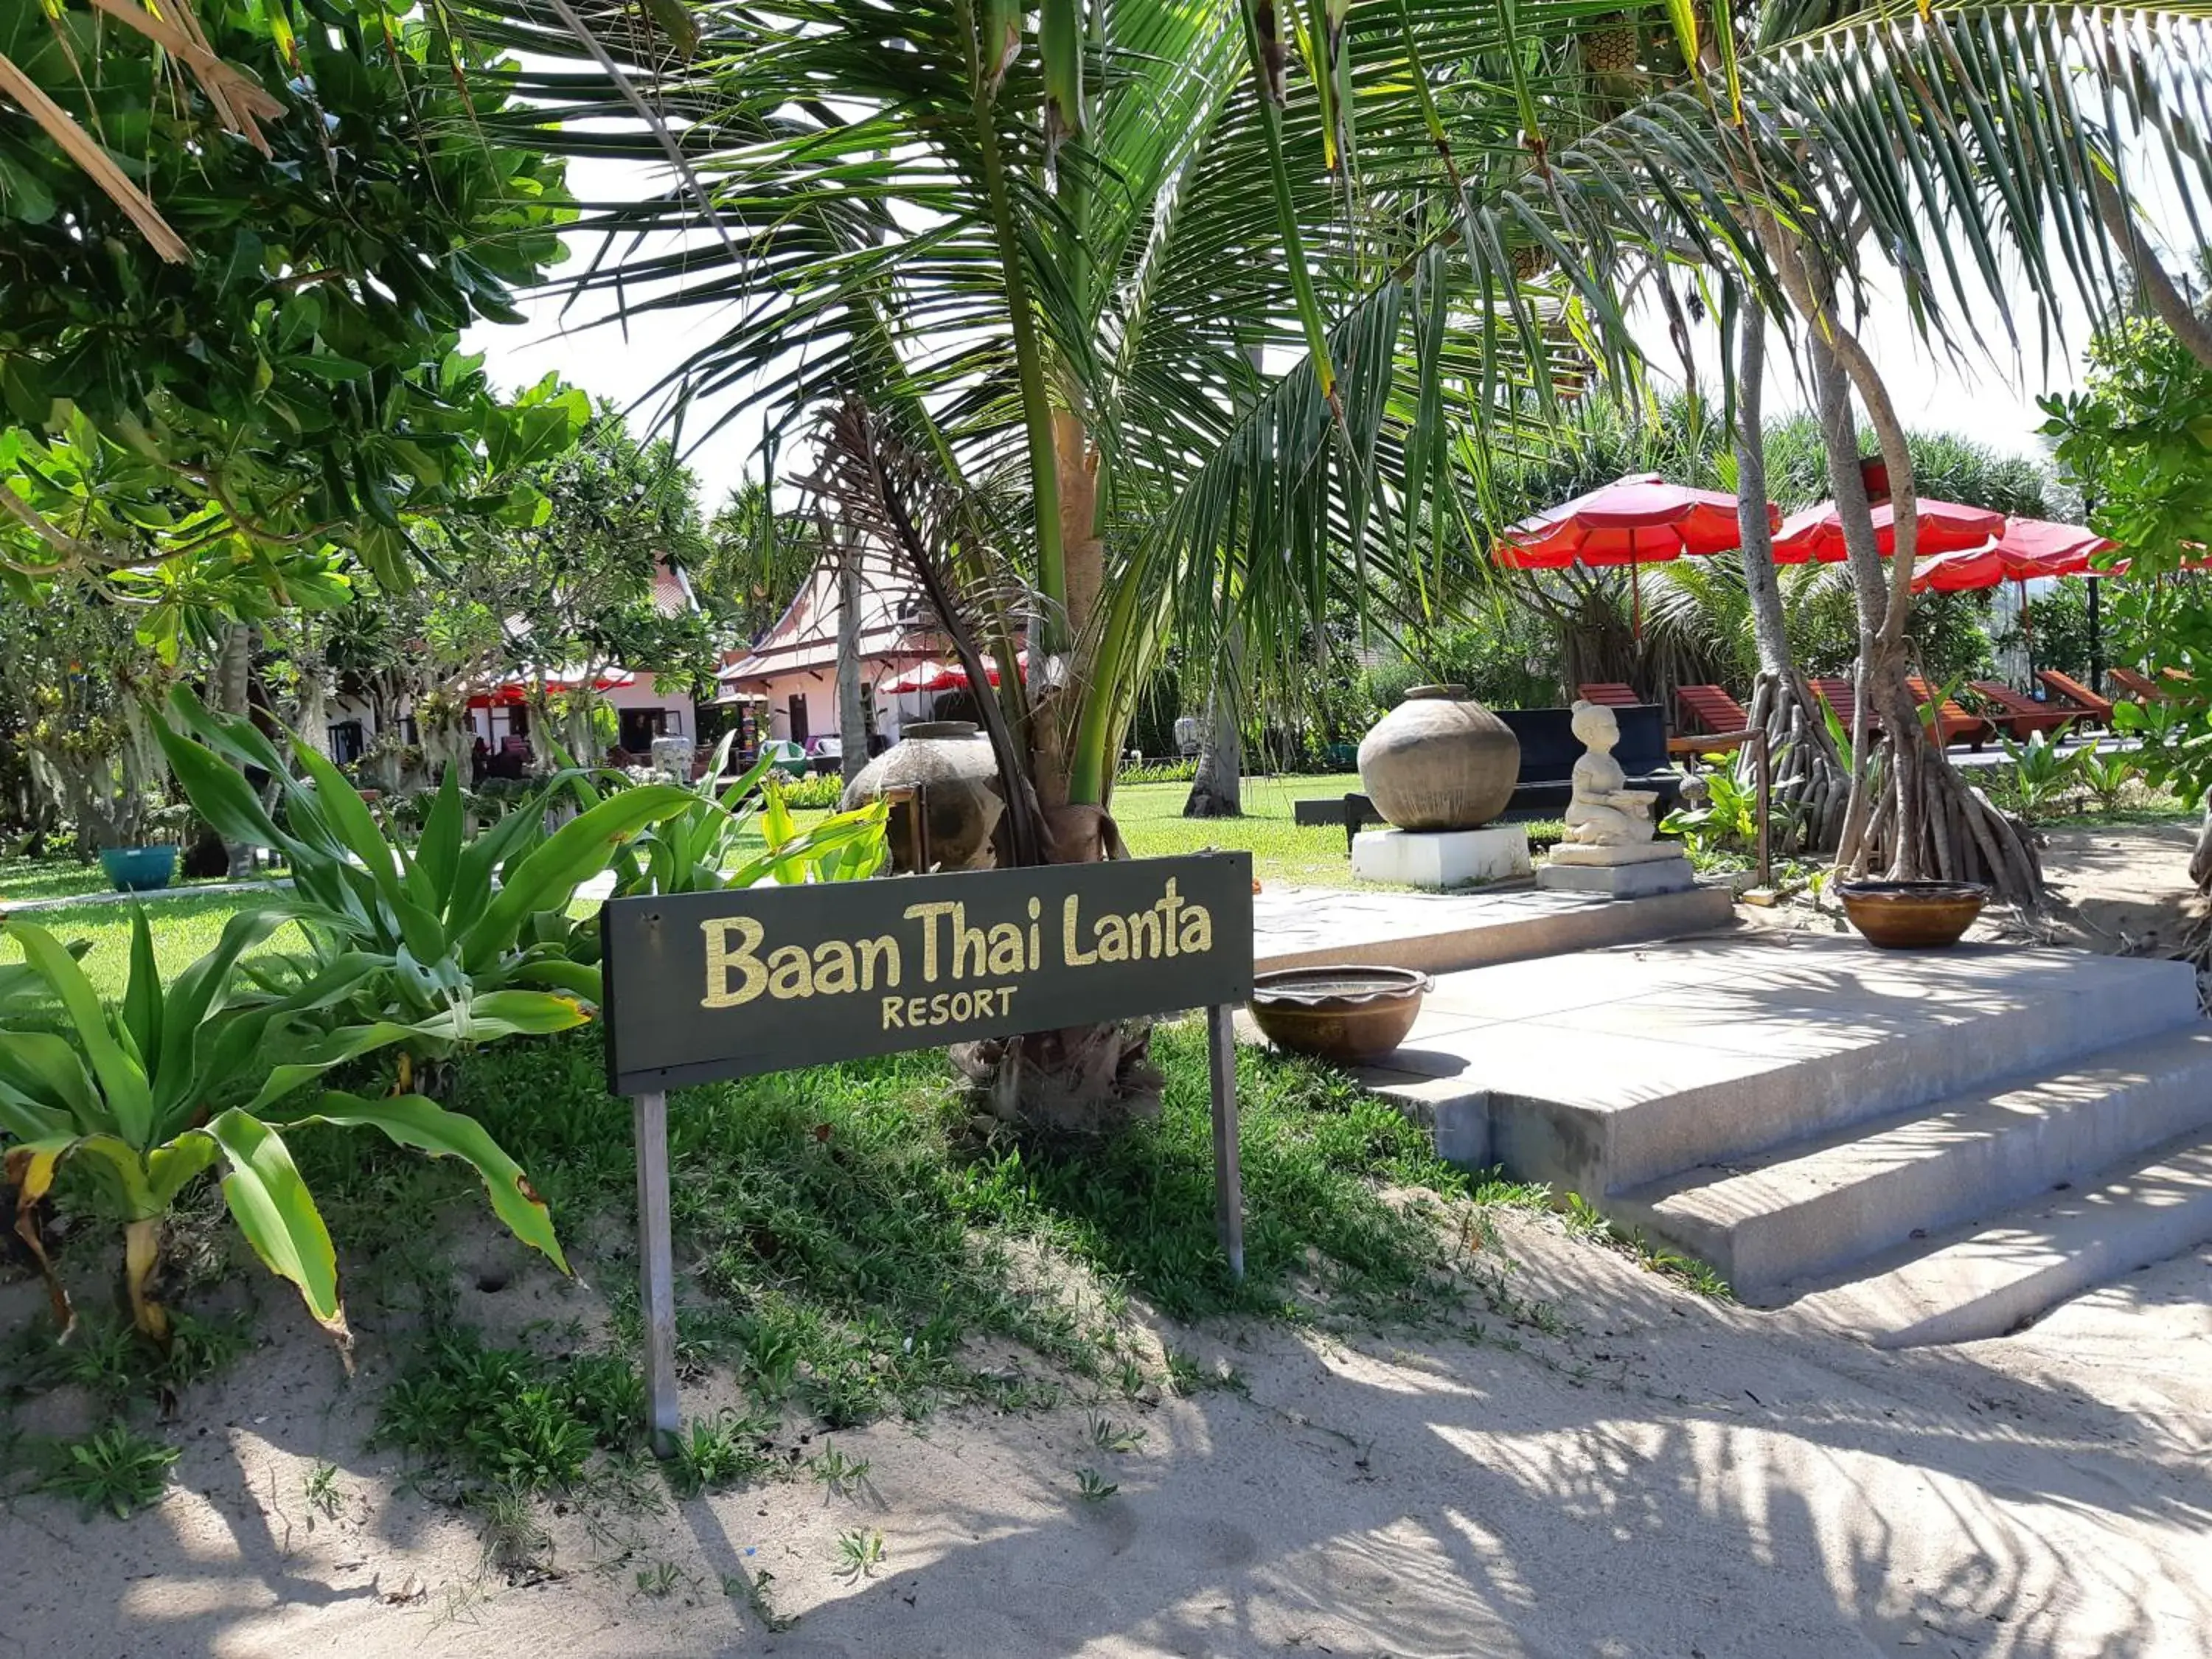 Property logo or sign in Baan Thai Lanta Resort